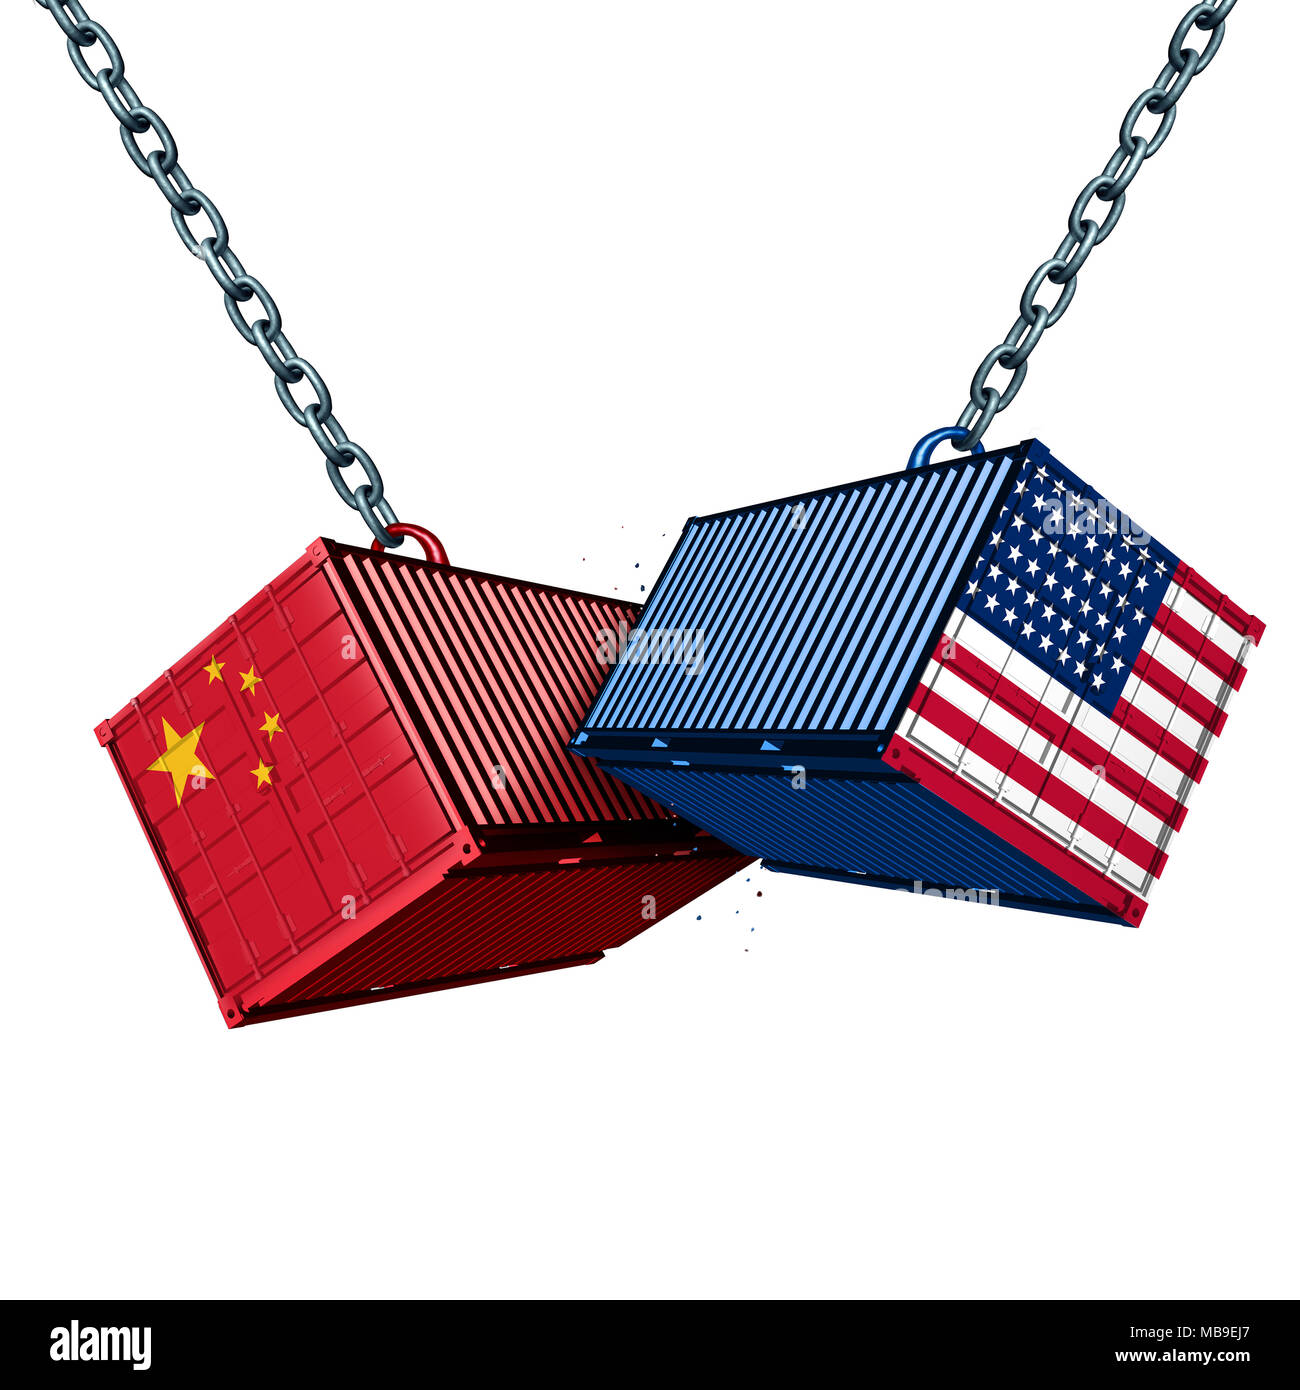 Cinesi e americani guerra tariffaria come una Cina STATI UNITI problema commerciale come due contenitori di carico in conflitto come un economico disputa sulle importazioni e le esportazioni. Foto Stock